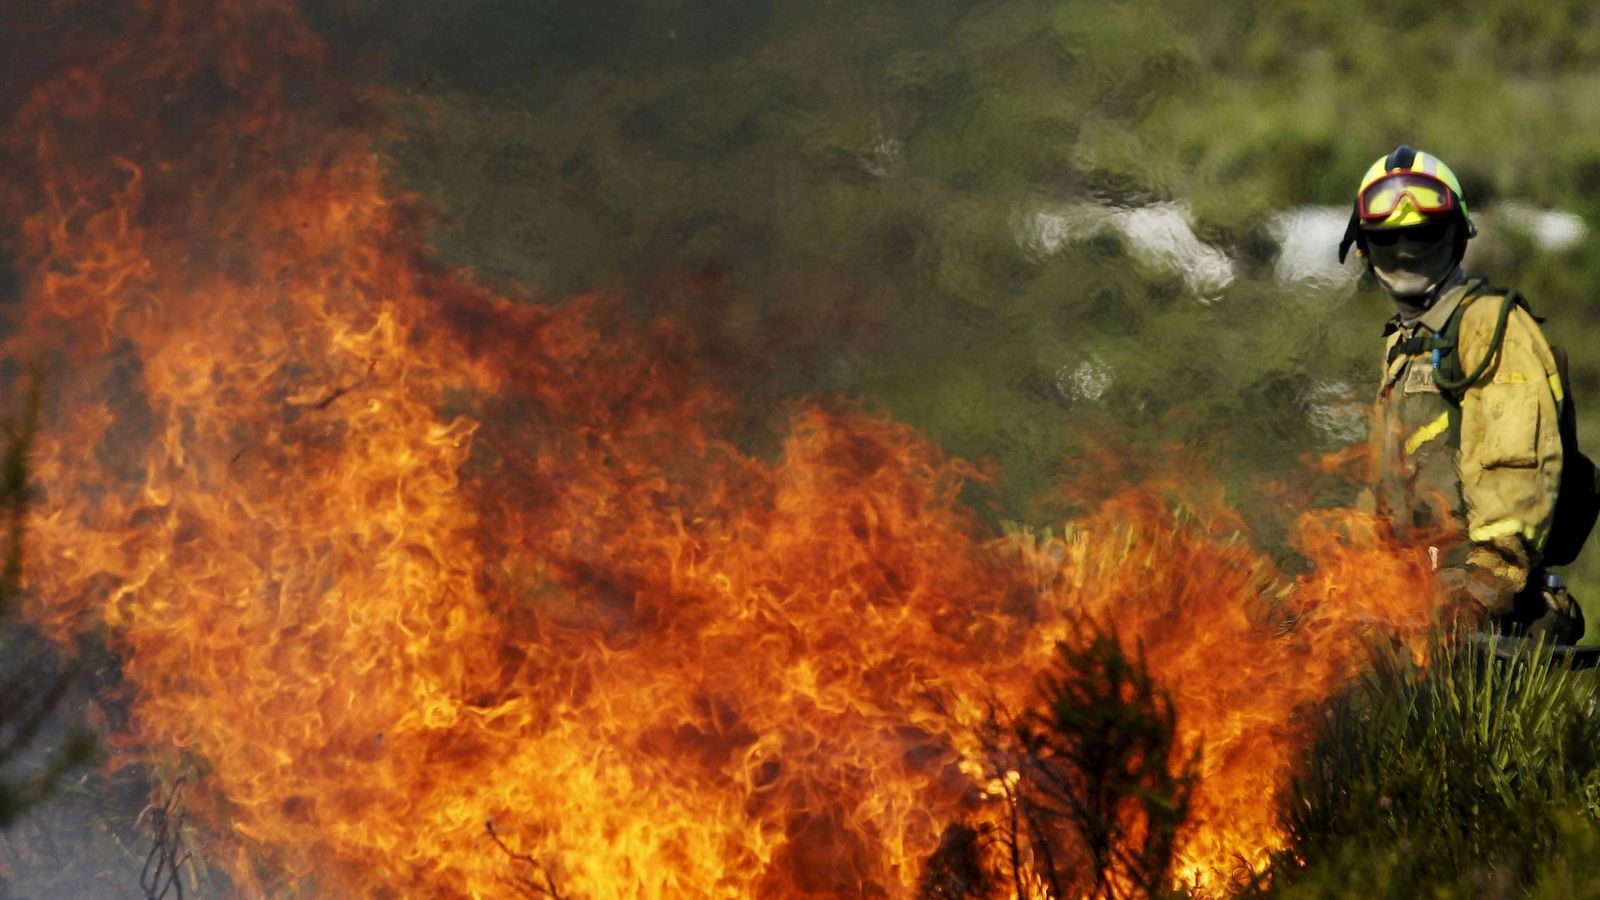 Foto: Un brigada de refuerzo en un incendio forestal (BRIF) de Daroca (Zaragoza) lucha contra el fuego en el monte. (2010 / EFE)